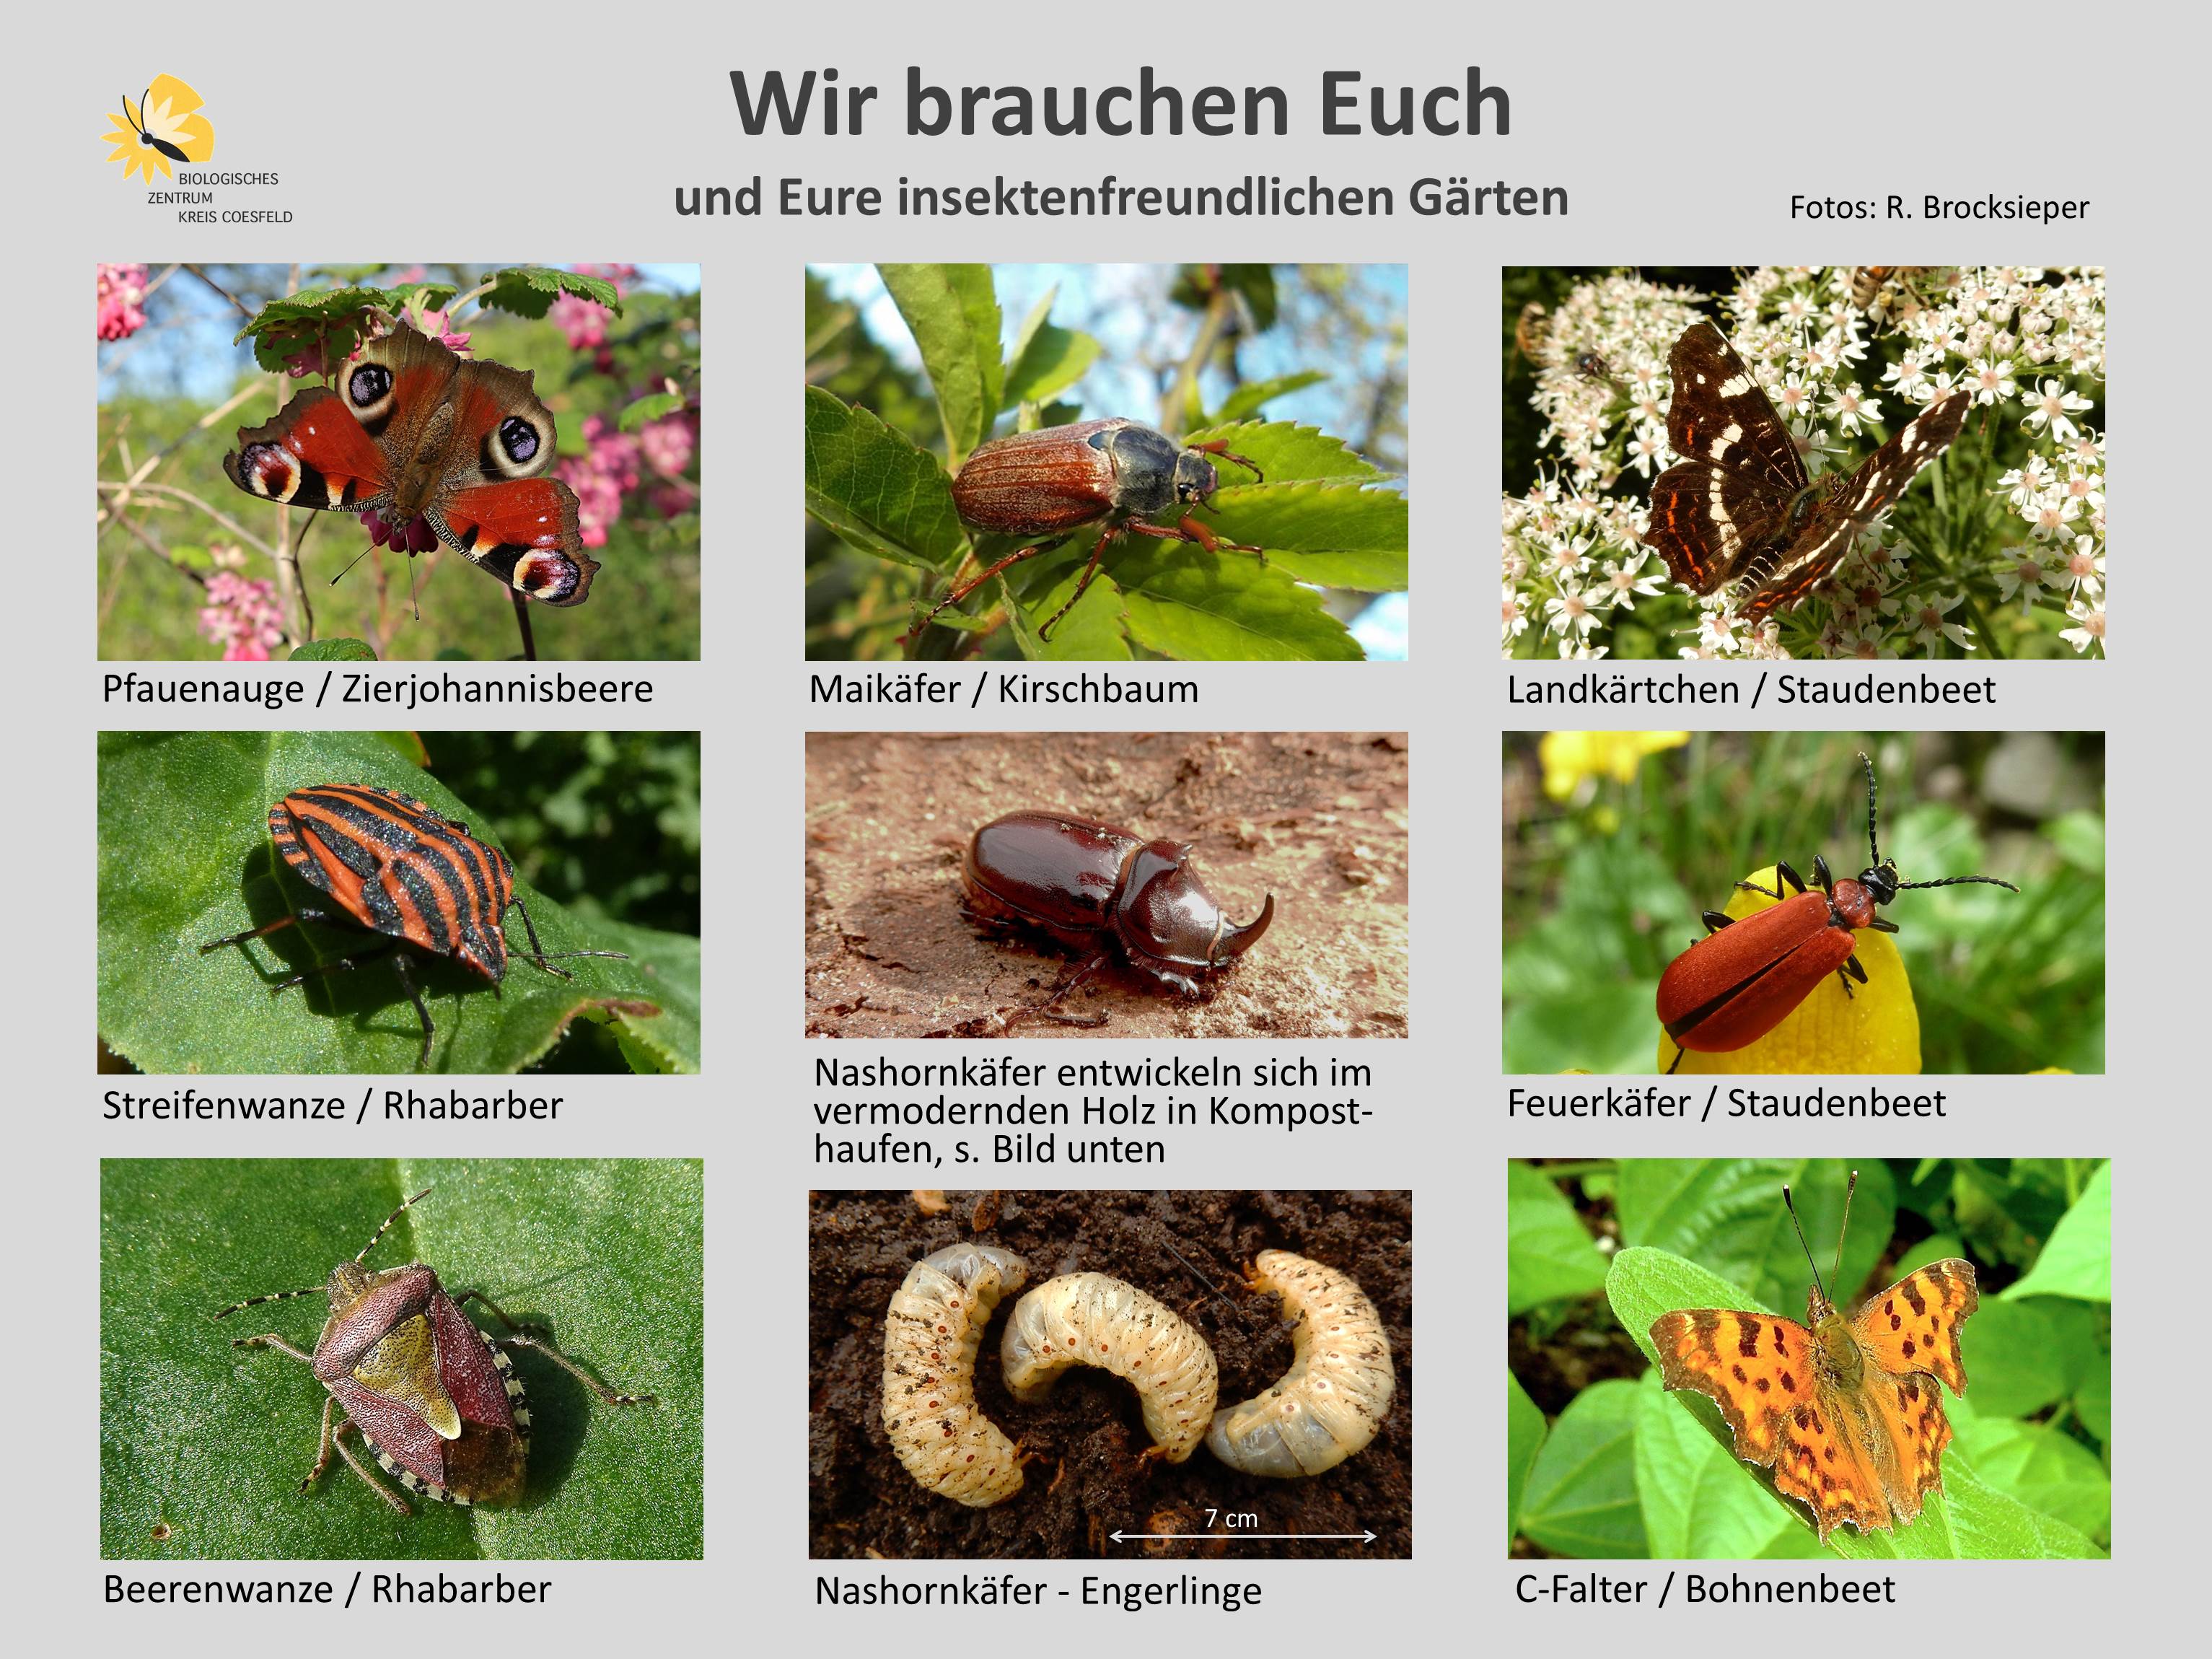 Wir brauchen Euch - eine Fotoauswahl von Insekten im Garten